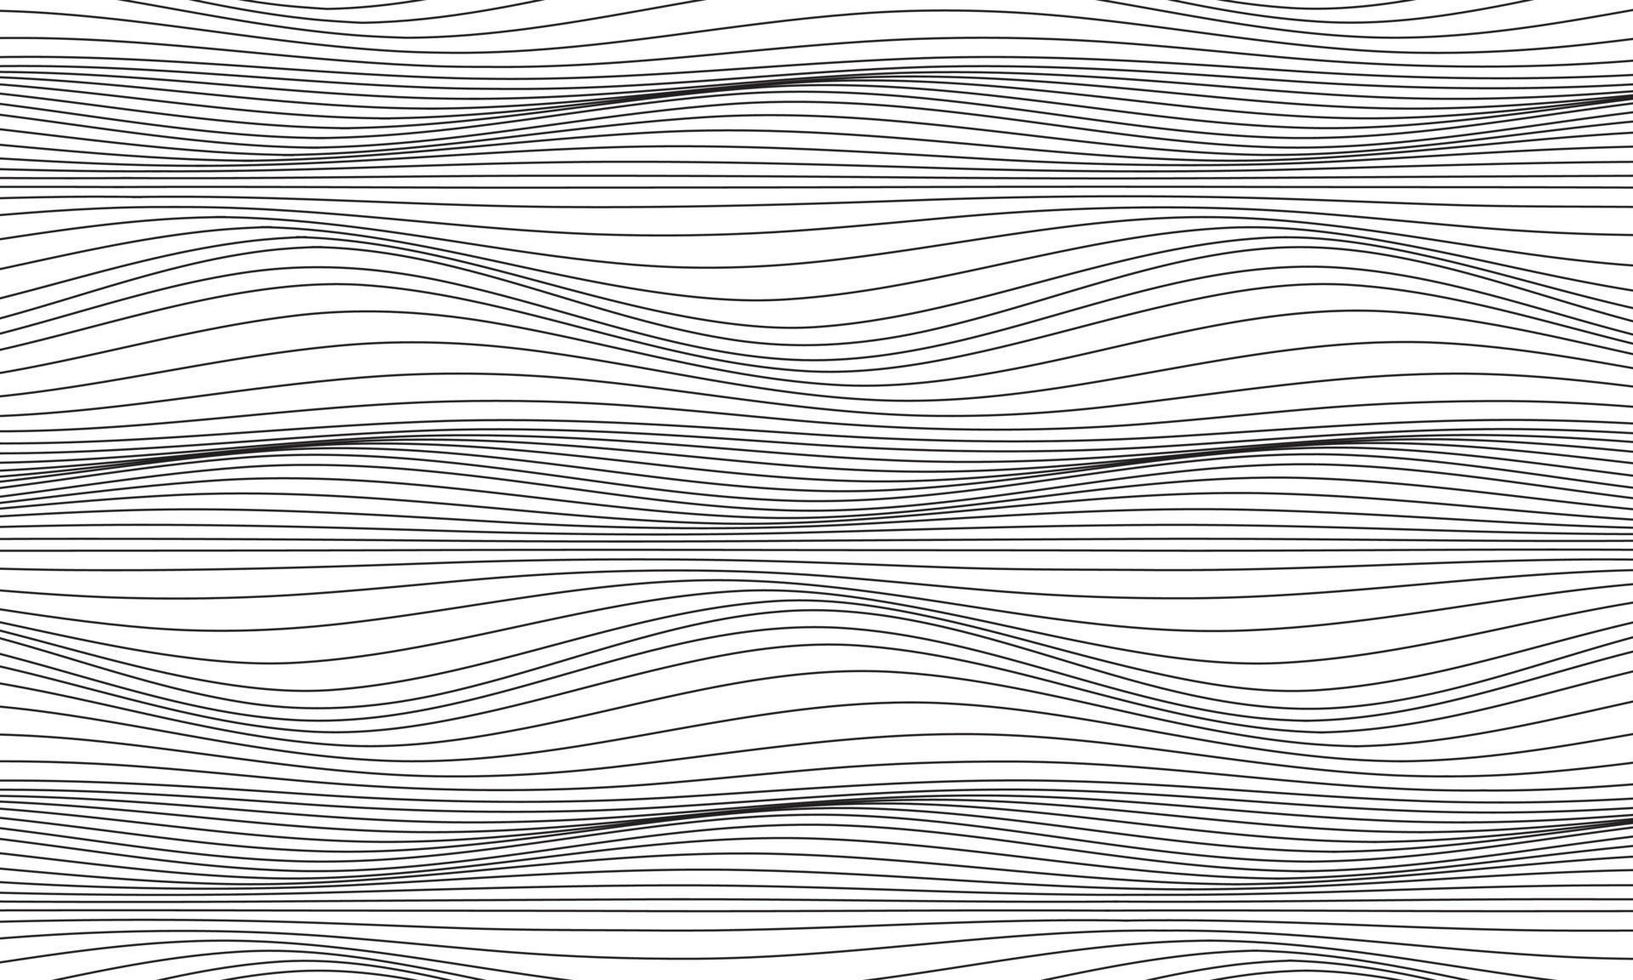 courbe d'onde de ligne noire abstraite sur fond blanc vecteur de papier peint